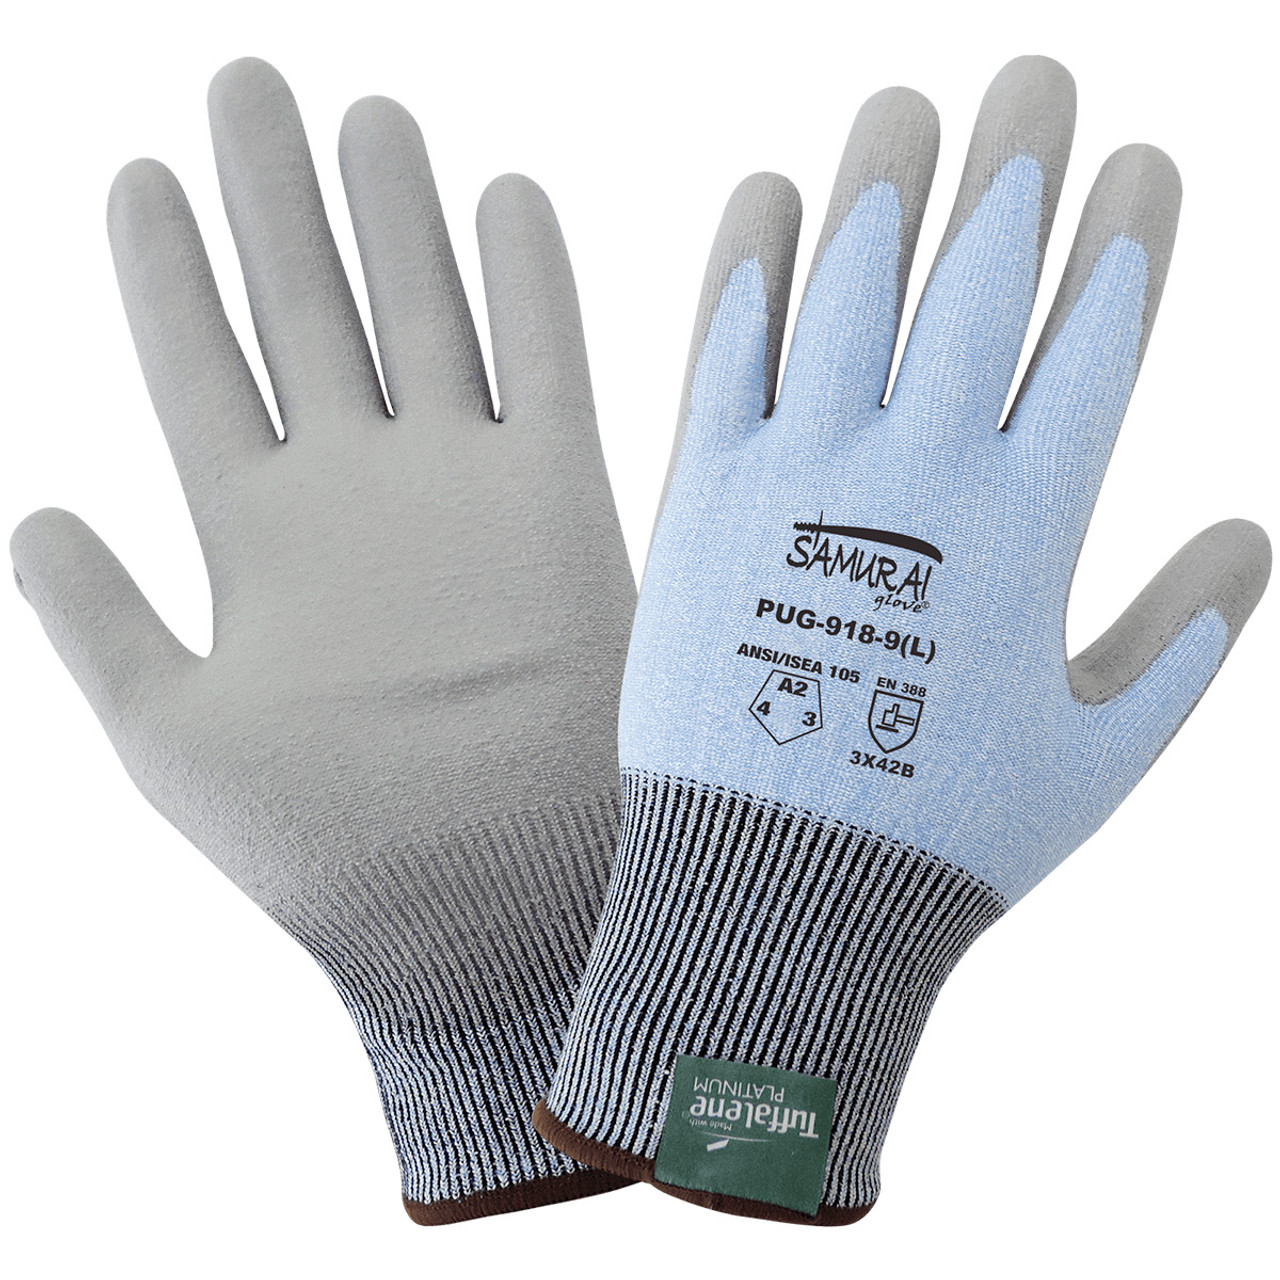 Cut & Puncture Resistant Gloves